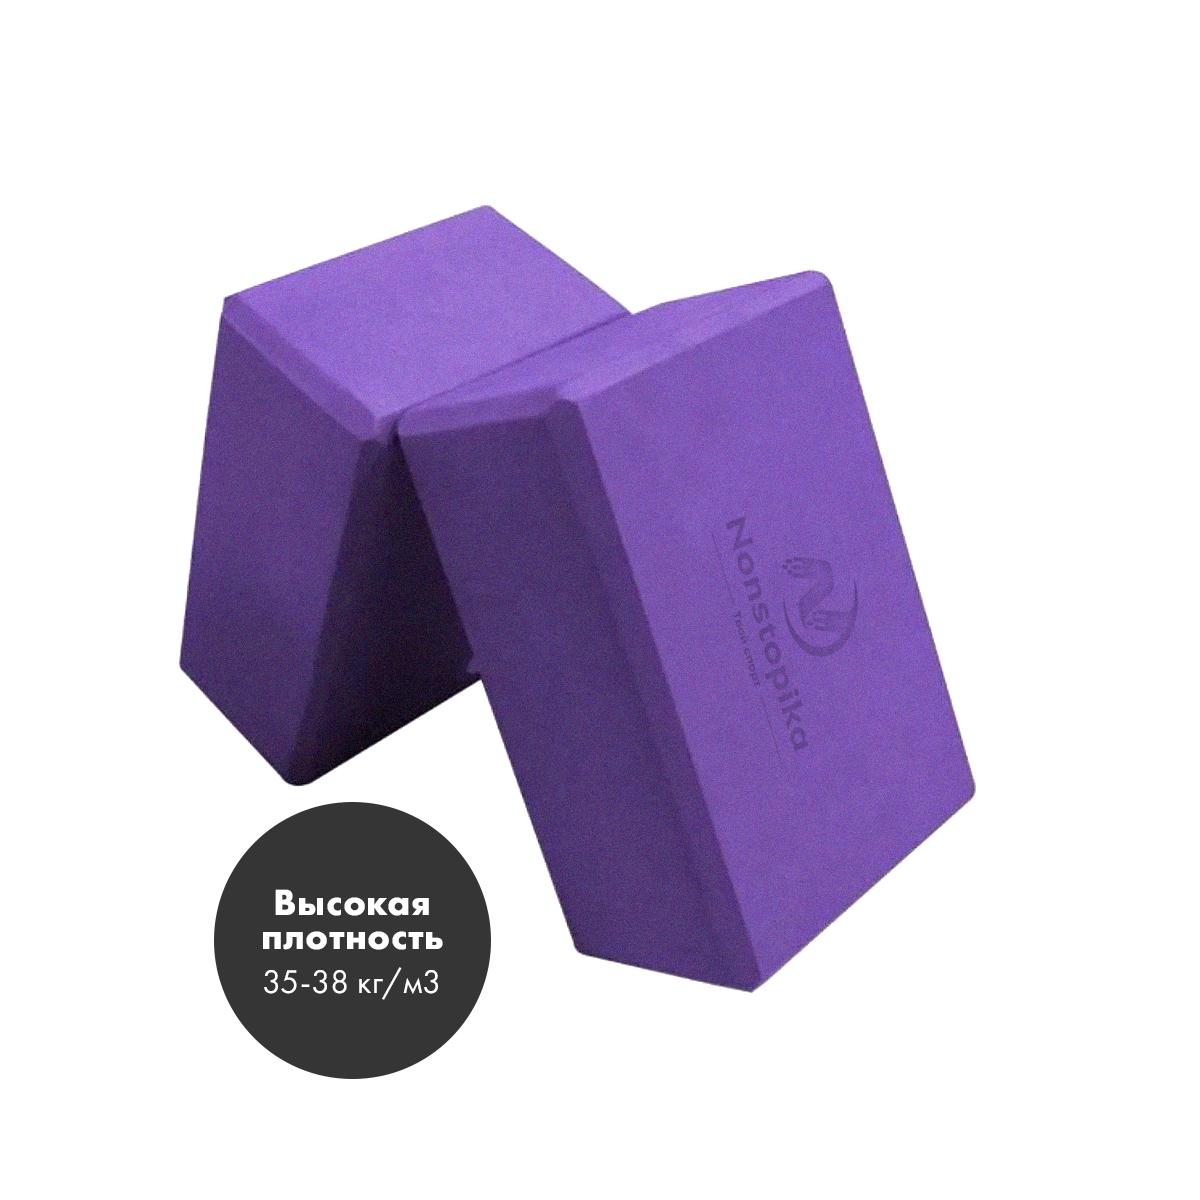 Набор блоков для йоги и фитнеса Nonstopika Fit, фиолетовый, 2 шт, 23х15х7,5см